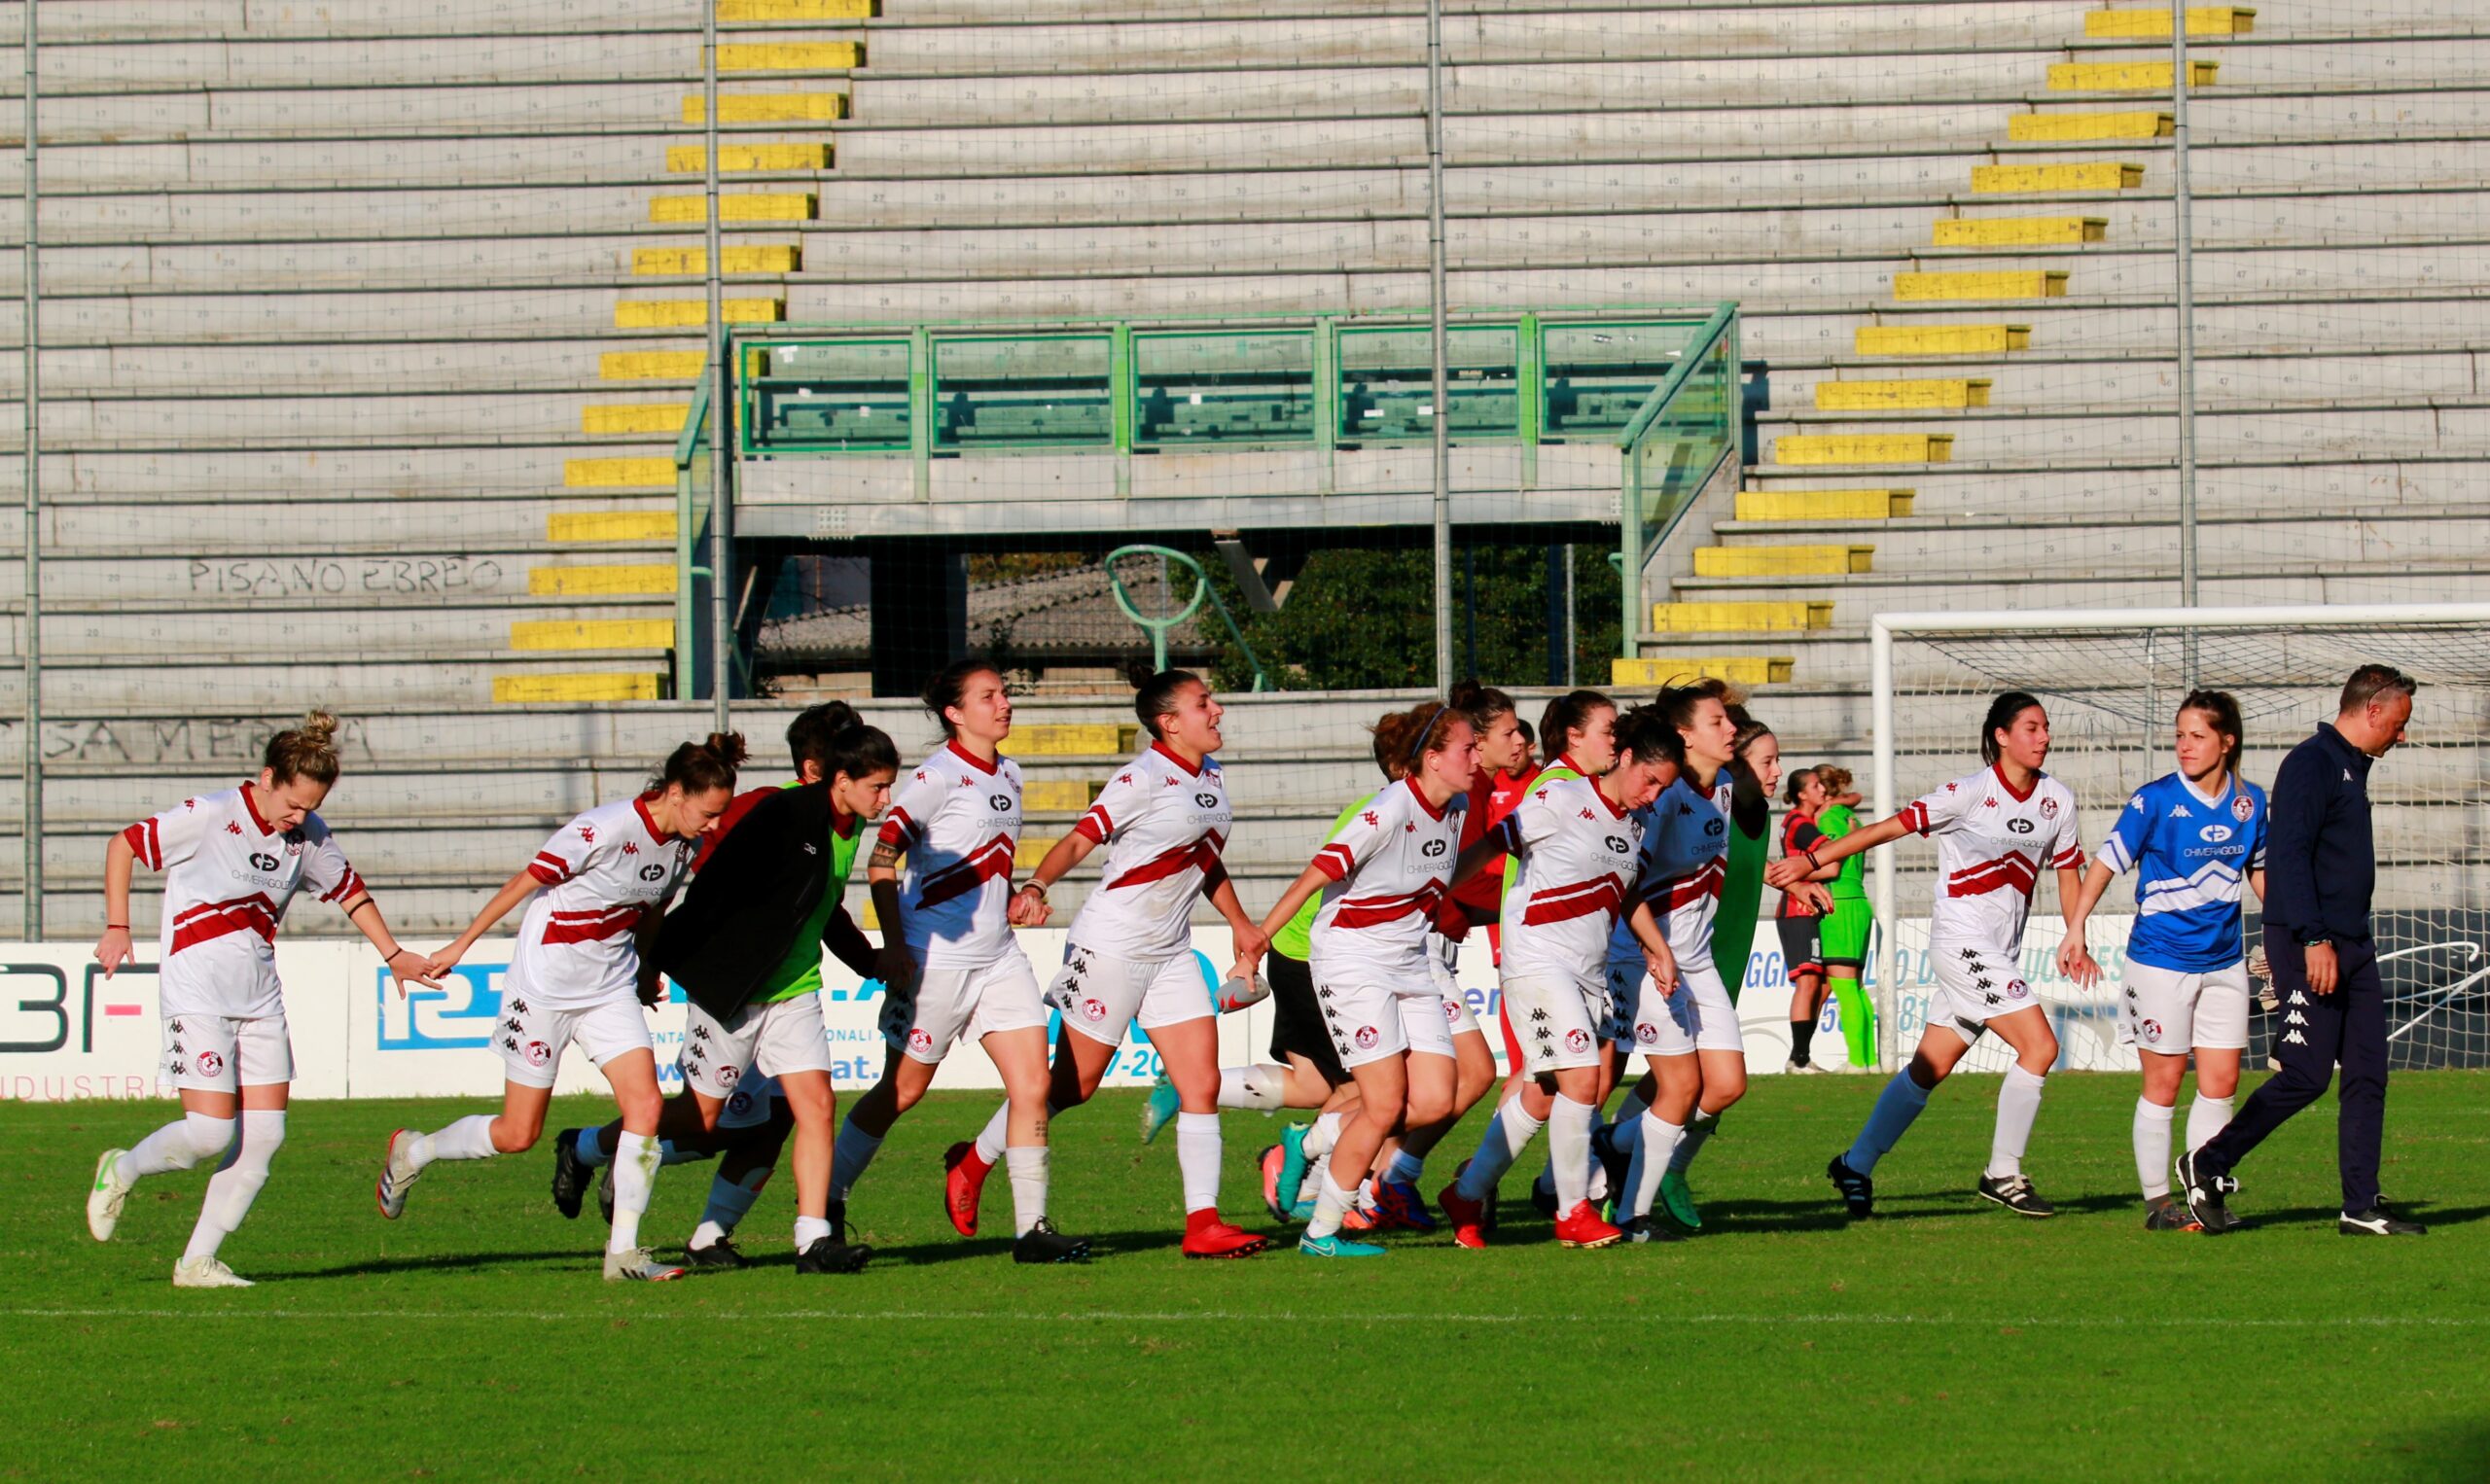 Acf Arezzo – Spezia 2-0: Razzolini per il vantaggio, Vicchiarello sigla il raddoppio